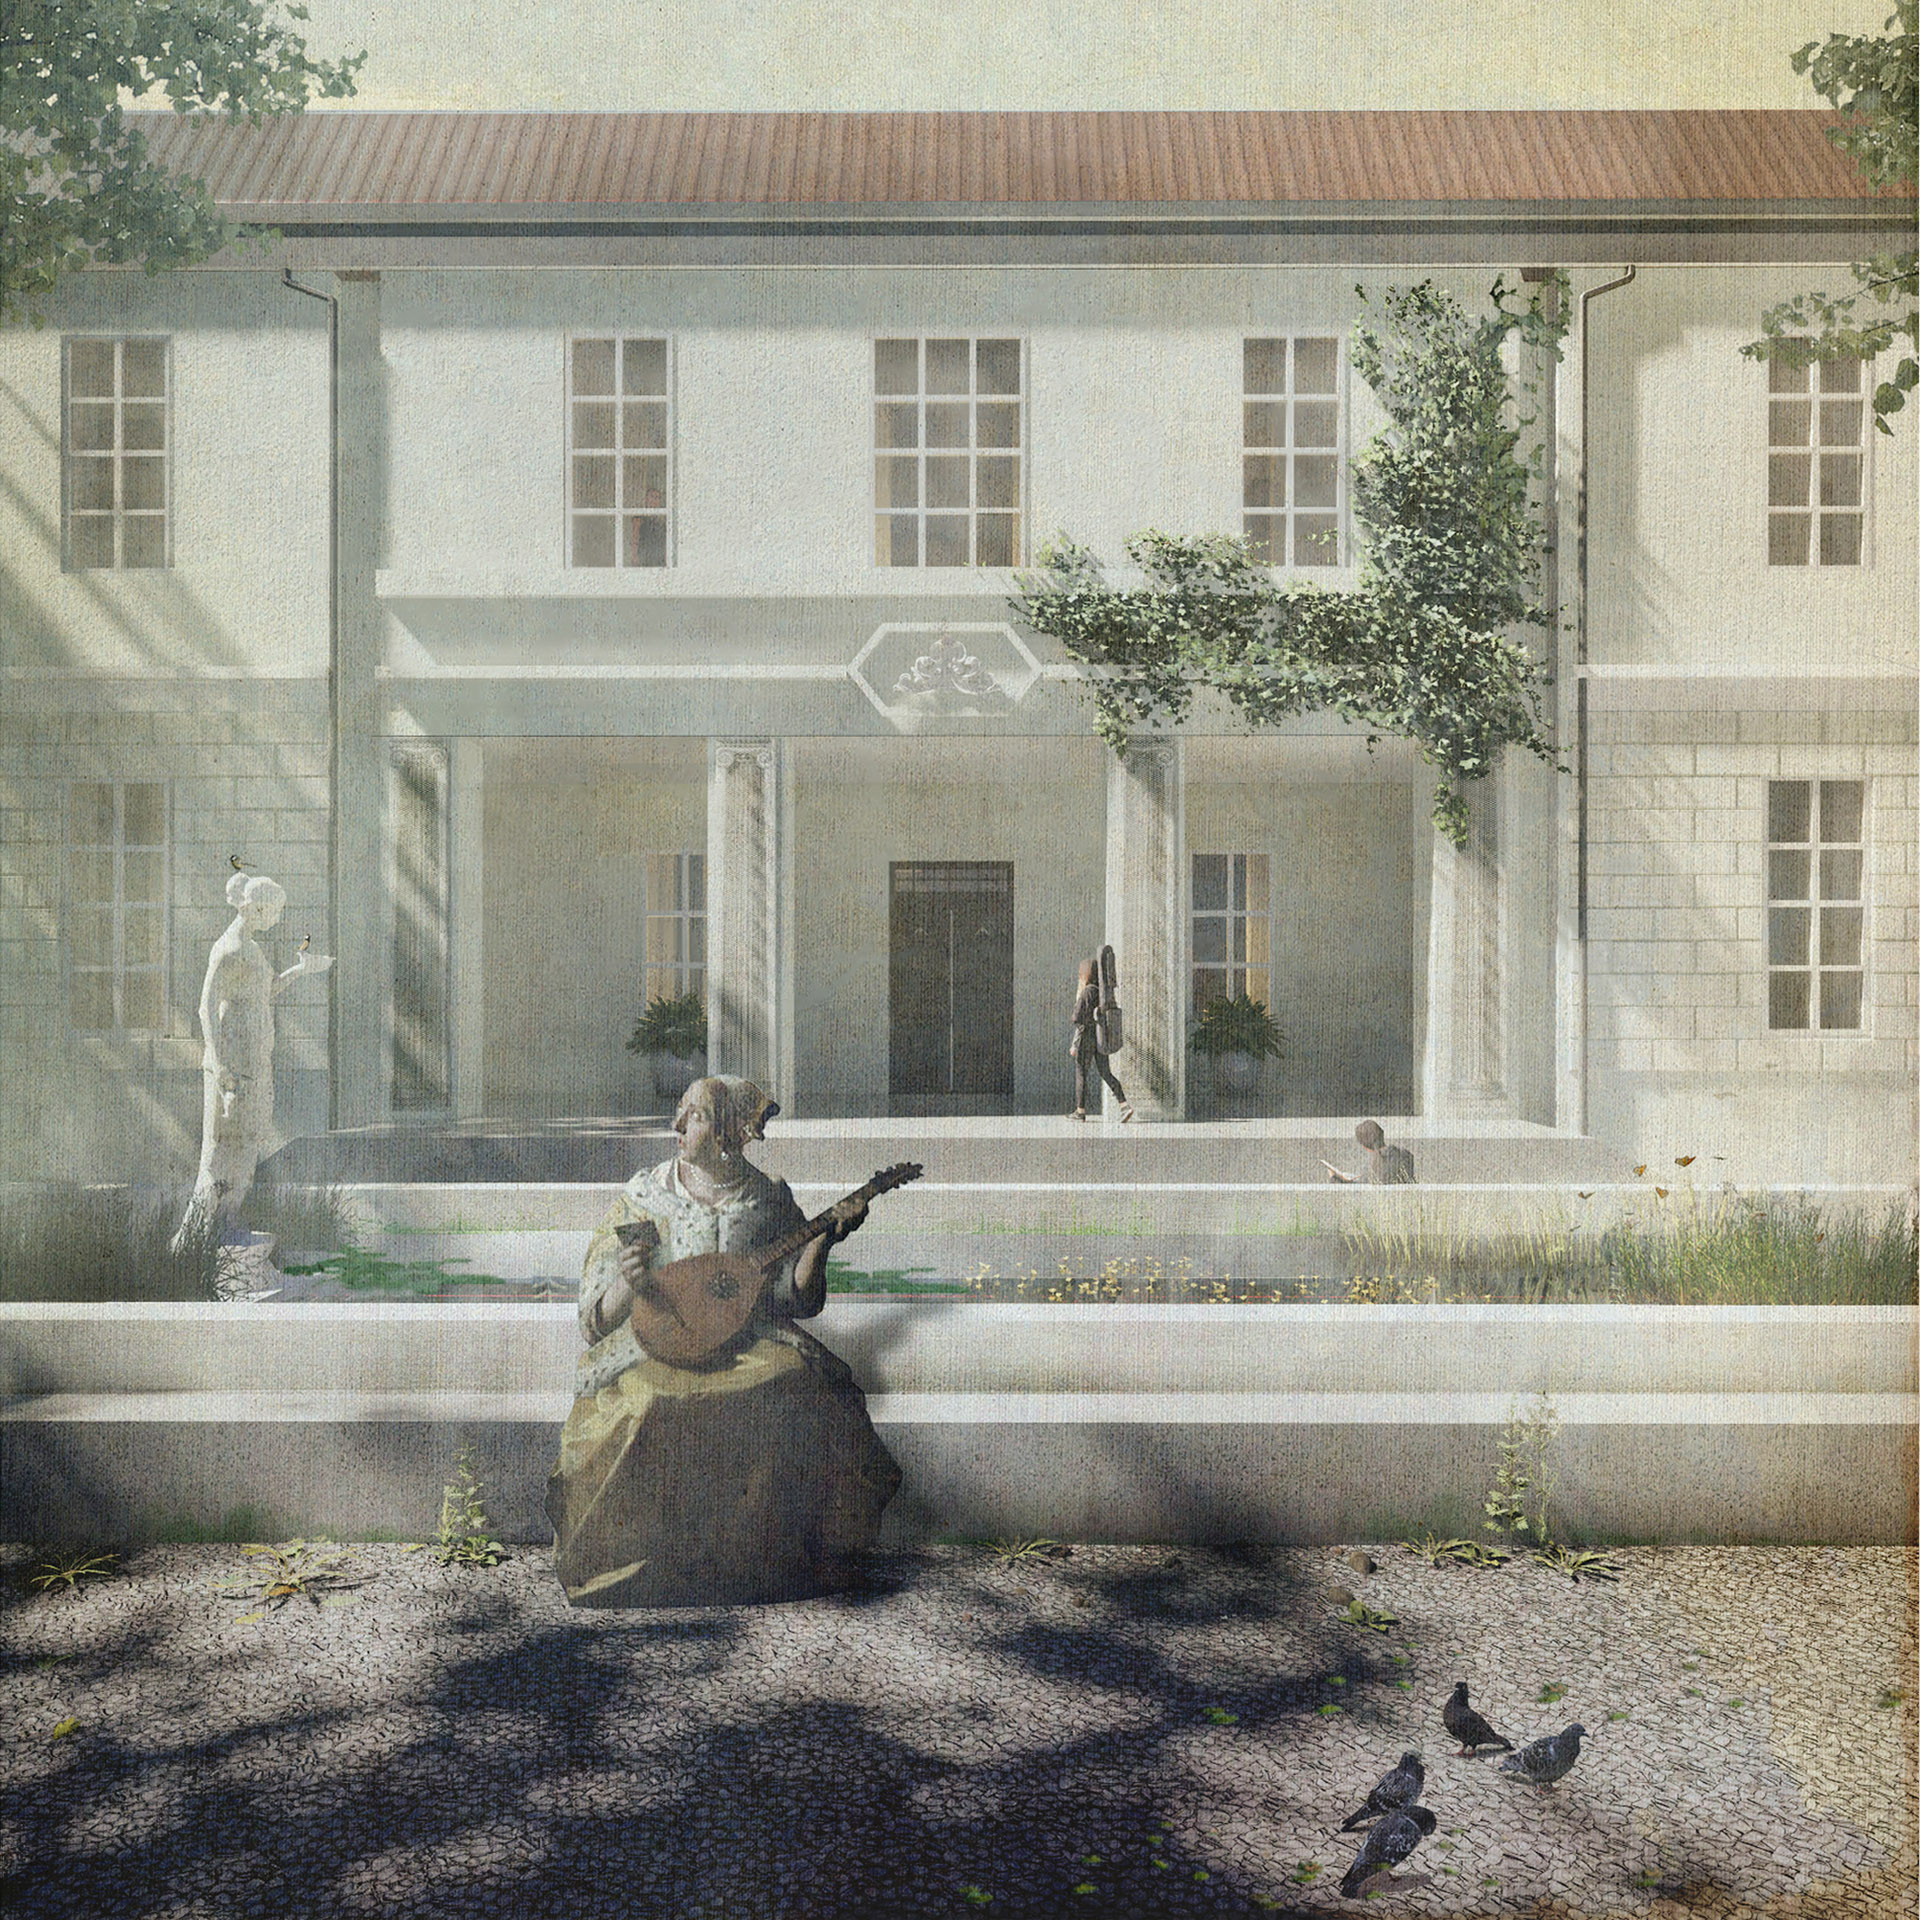 Wizualizacja Domu Kultury - Połączenie klasyki i współczesności, rendery stylizowane na stare fotografie.